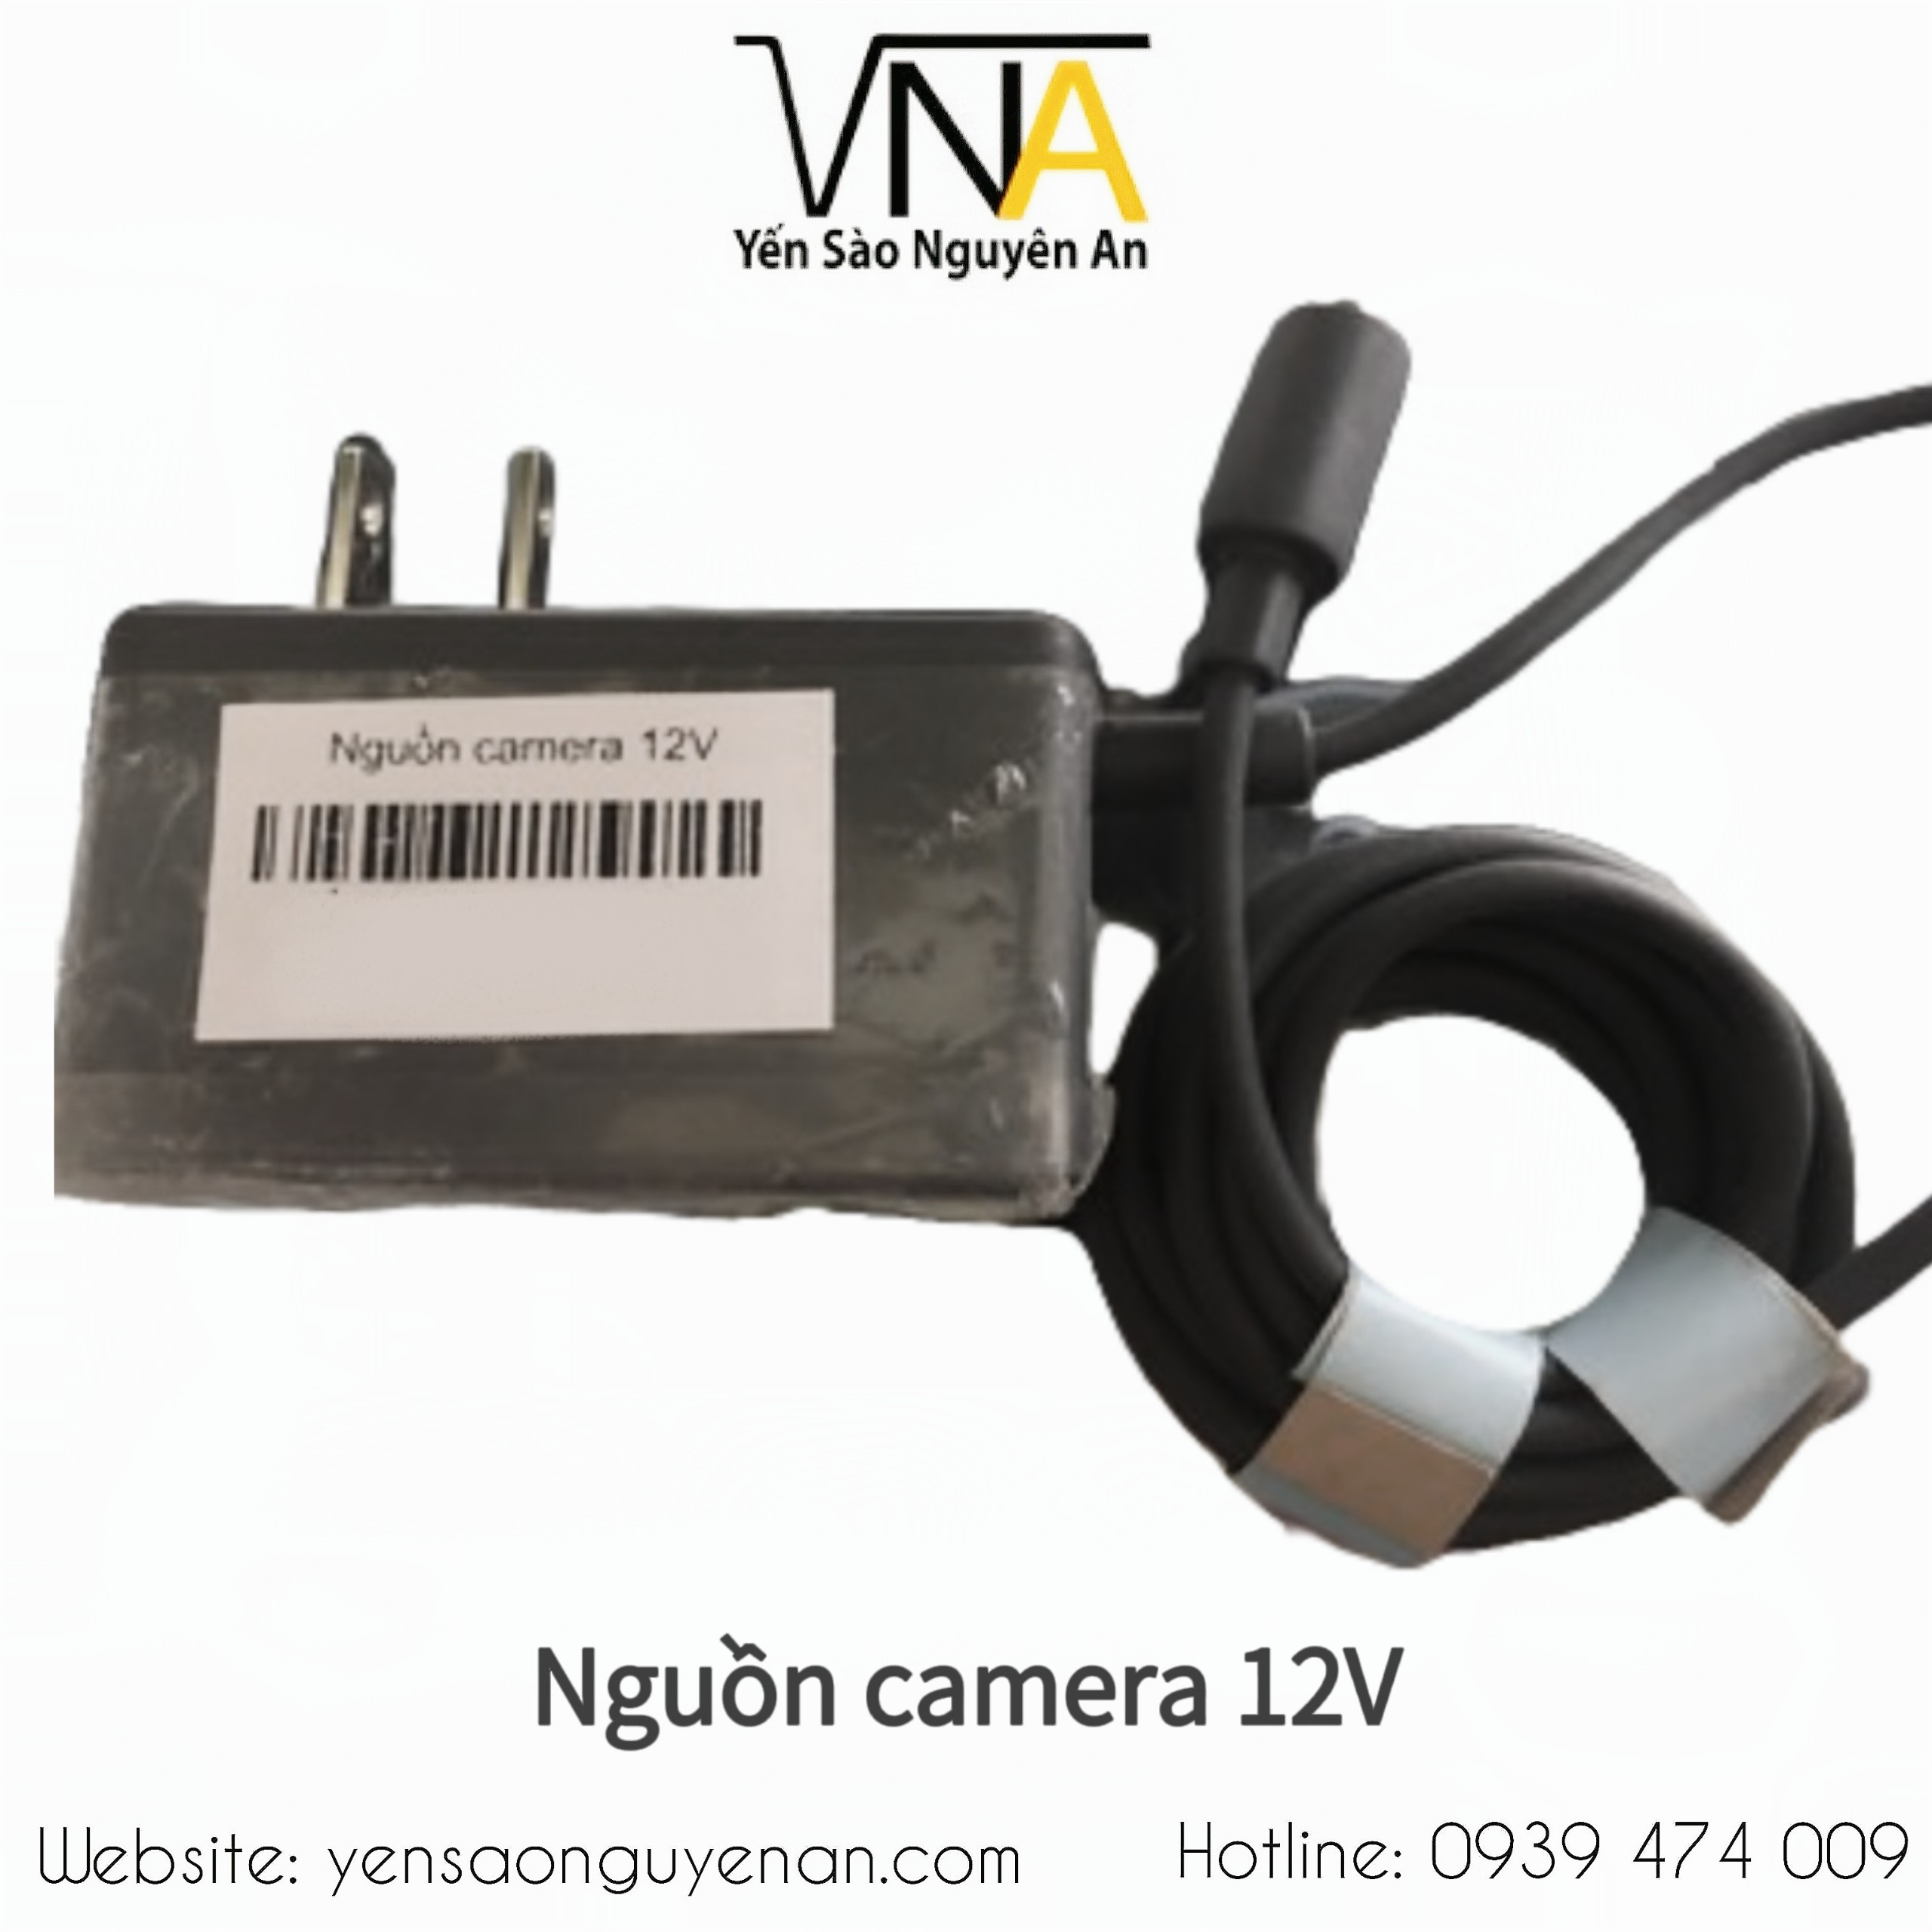 Nguồn camera 12V